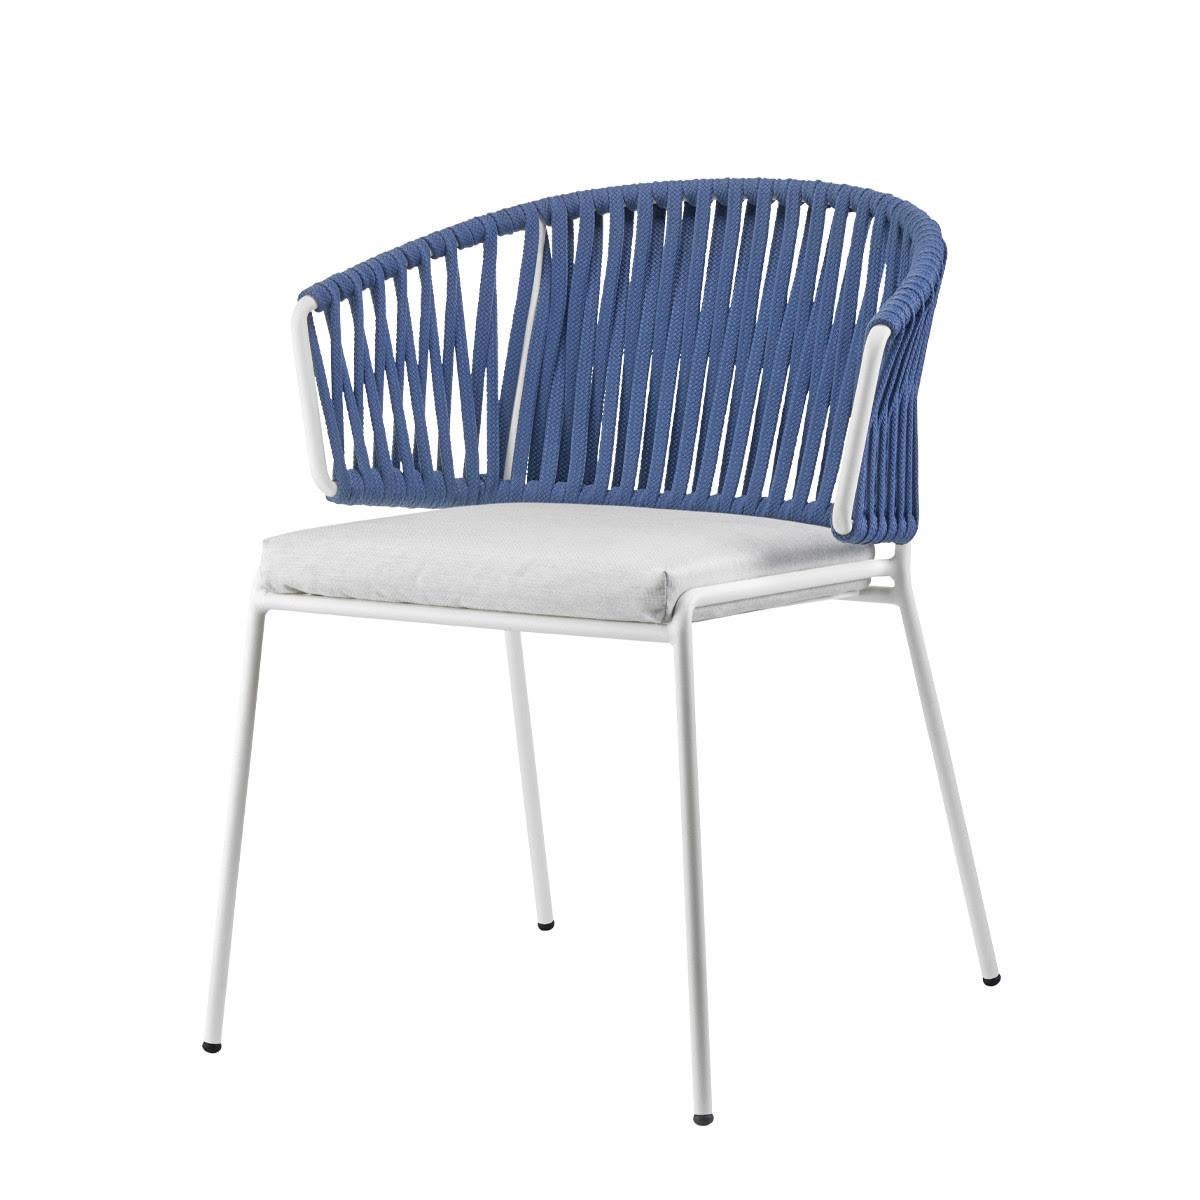 Paire de fauteuils d'extérieur ou d'intérieur en métal et cordes bleues, 21e siècle
Fauteuil de production moderne pour l'extérieur ou l'intérieur. La structure est en métal et renforcée par les cordes à l'arrière. Ce fauteuil présente un design